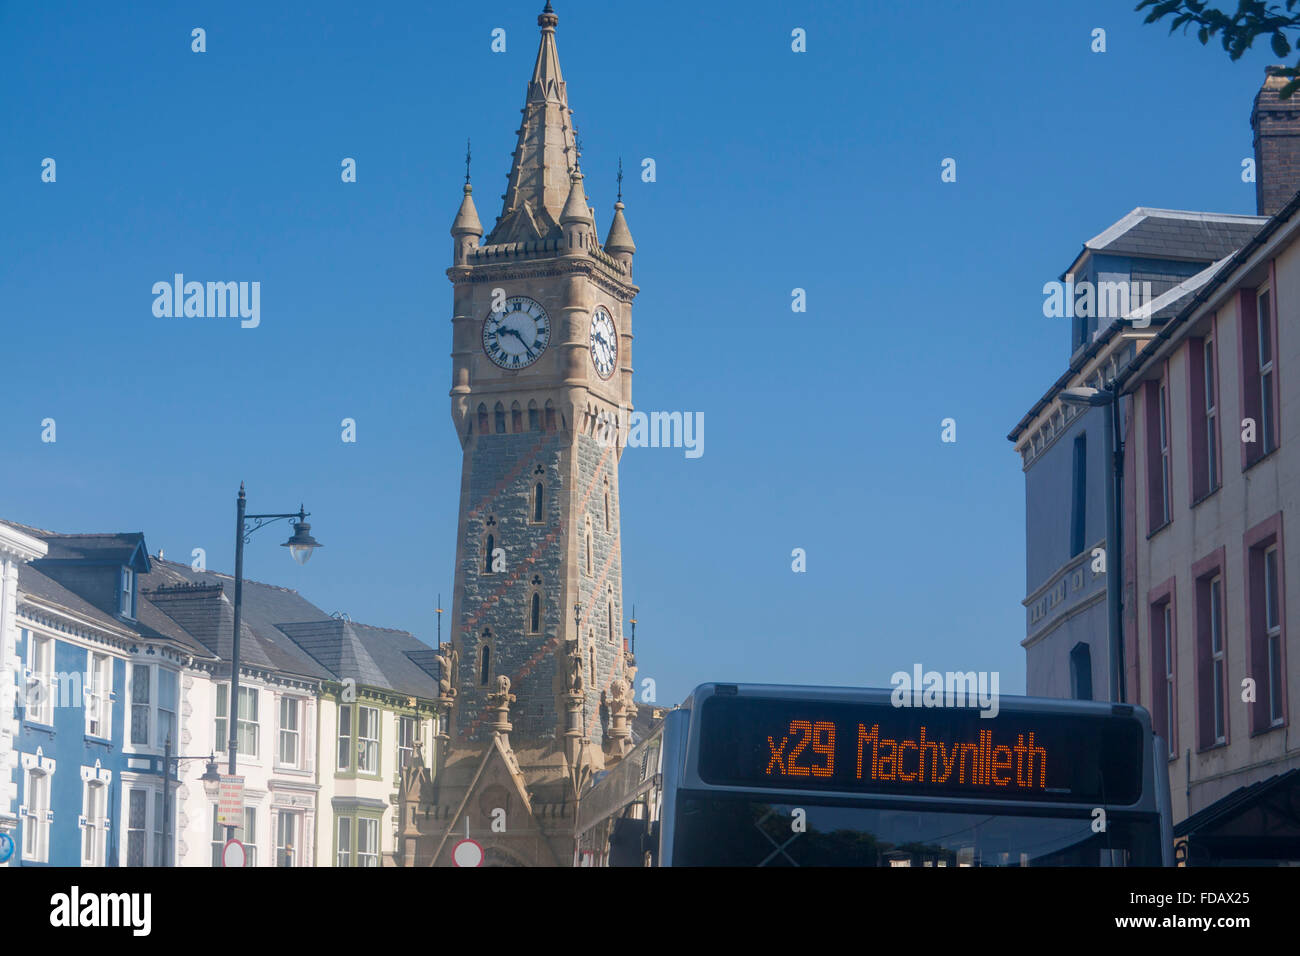 Machynlleth tour de l'horloge et X29 bus avec achynlleth "destination" Powys Pays de Galles UK Banque D'Images